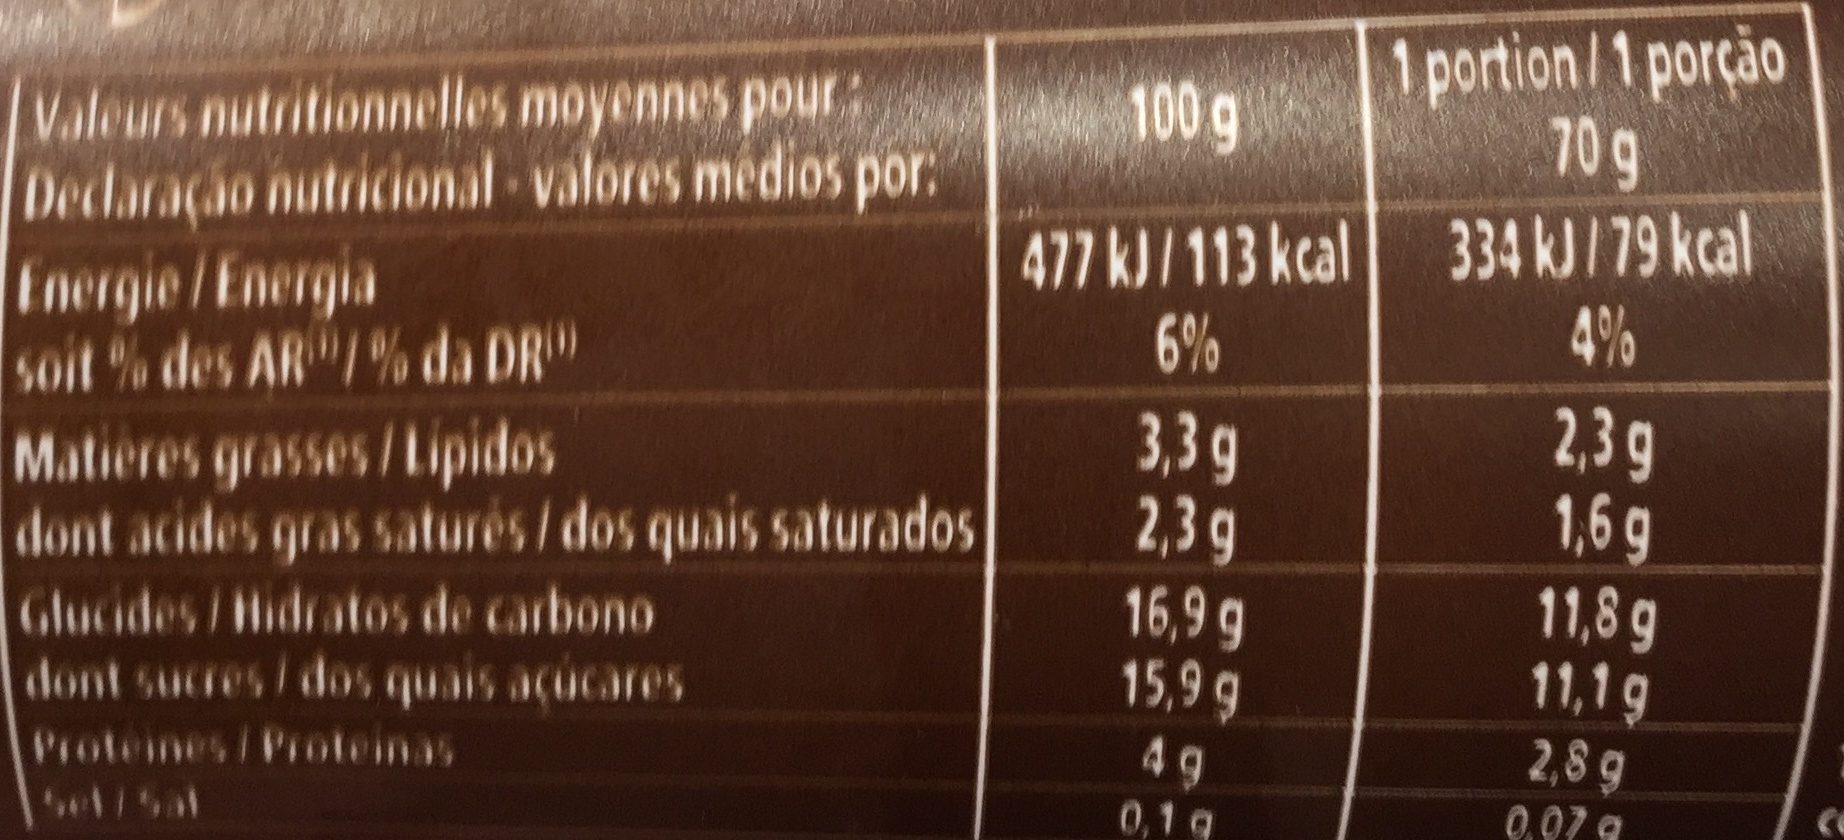 Mousse Au Chocolat - Nutrition facts - fr